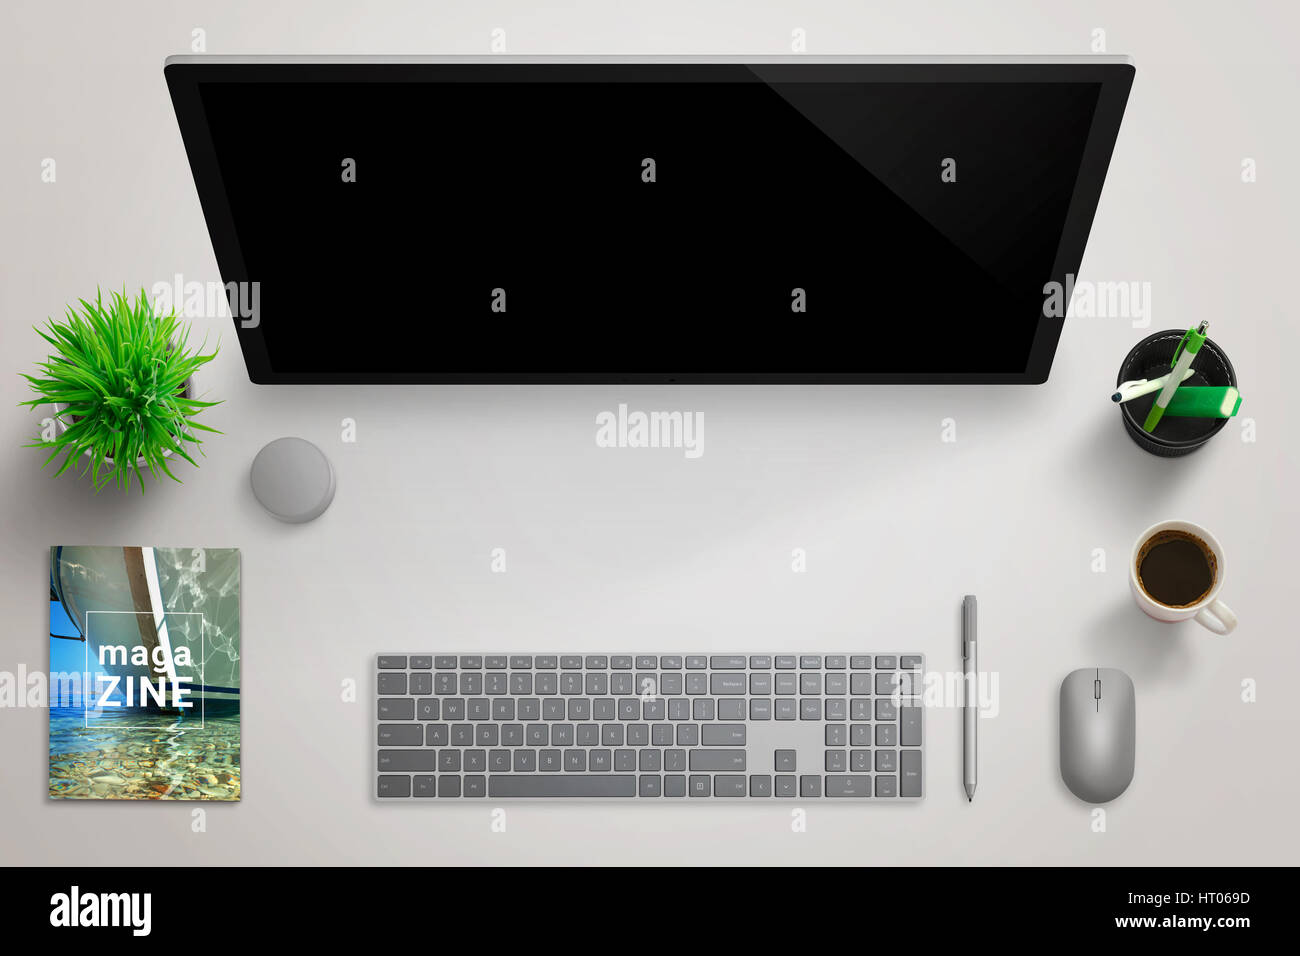 Journaliste, reporter moderne studio 24 avec l'écran de l'ordinateur pour une maquette. Vue supérieure de la scène avec une plante, magazine, stylos, café, souris, stylo, keyboar Banque D'Images